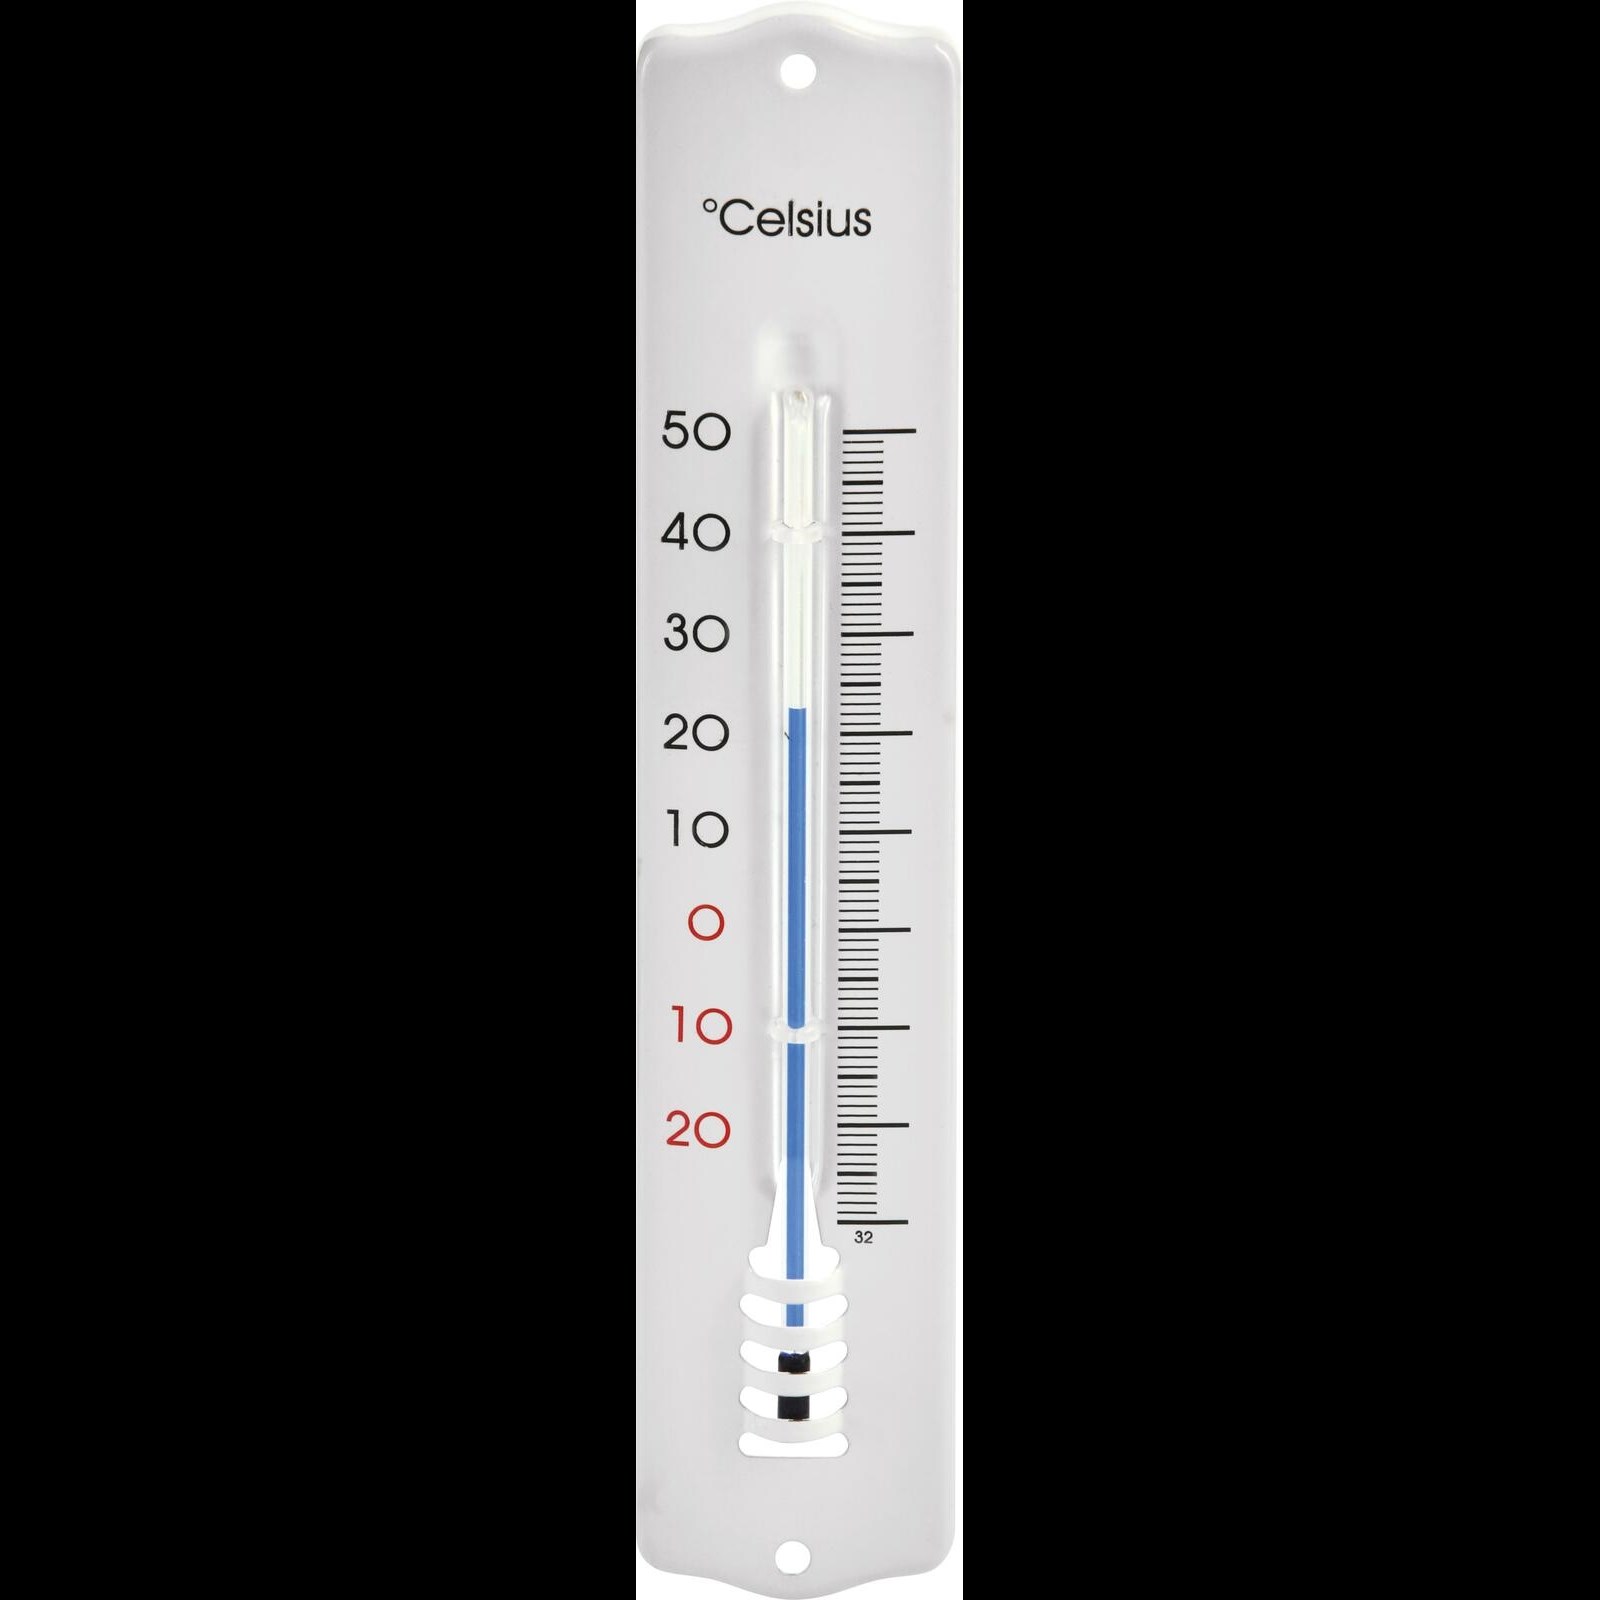 Thermomètre à alcool - bois